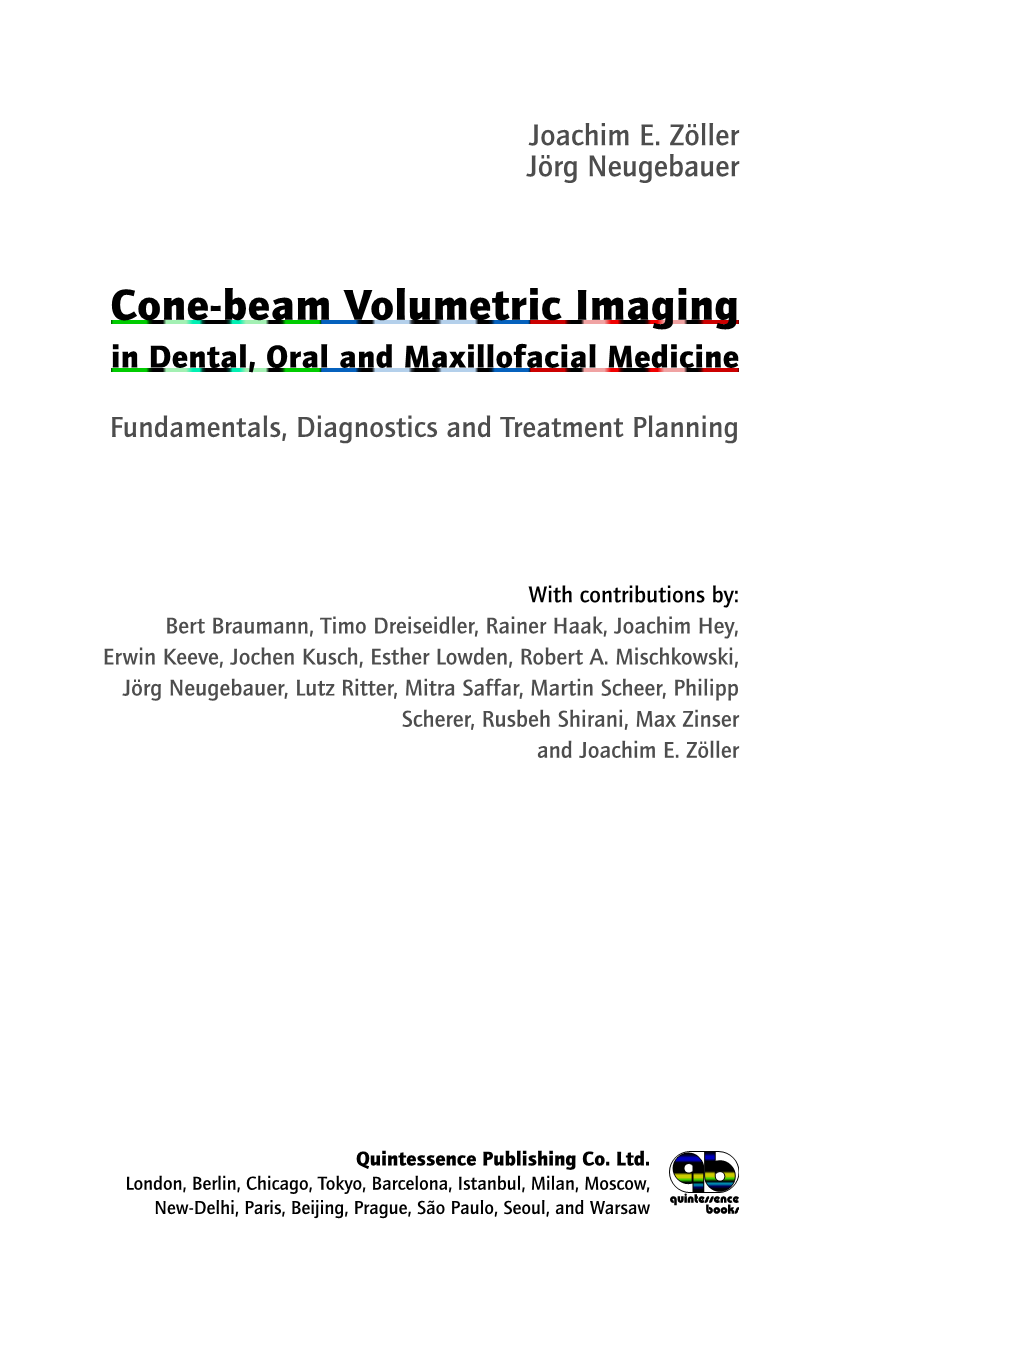 Cone-Beam Volumetric Imaging in Dental, Oral and Maxillofacial Medicine